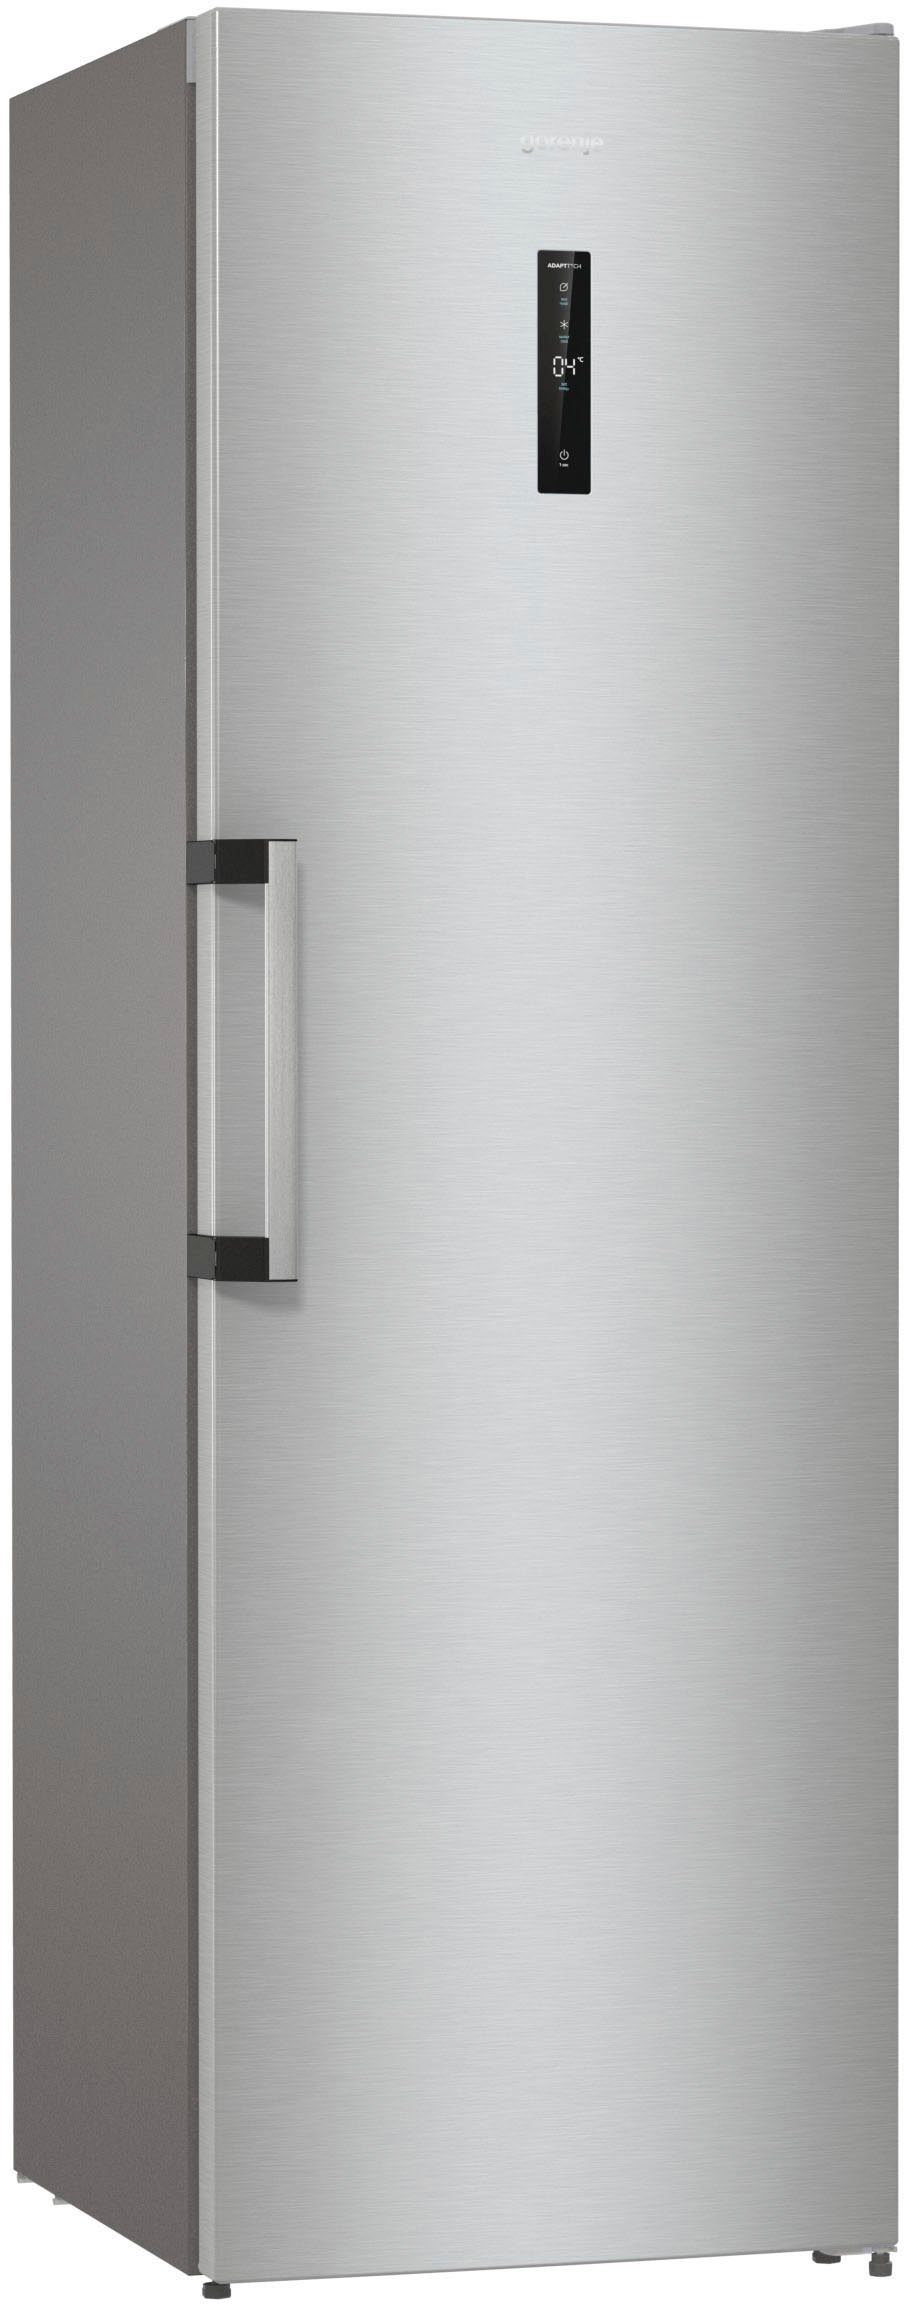 GORENJE Kühlschrank R619DAXL6, 185 cm QuickCooling-Funktion mit 59,5 cm hoch, Umluft-Kühlung breit